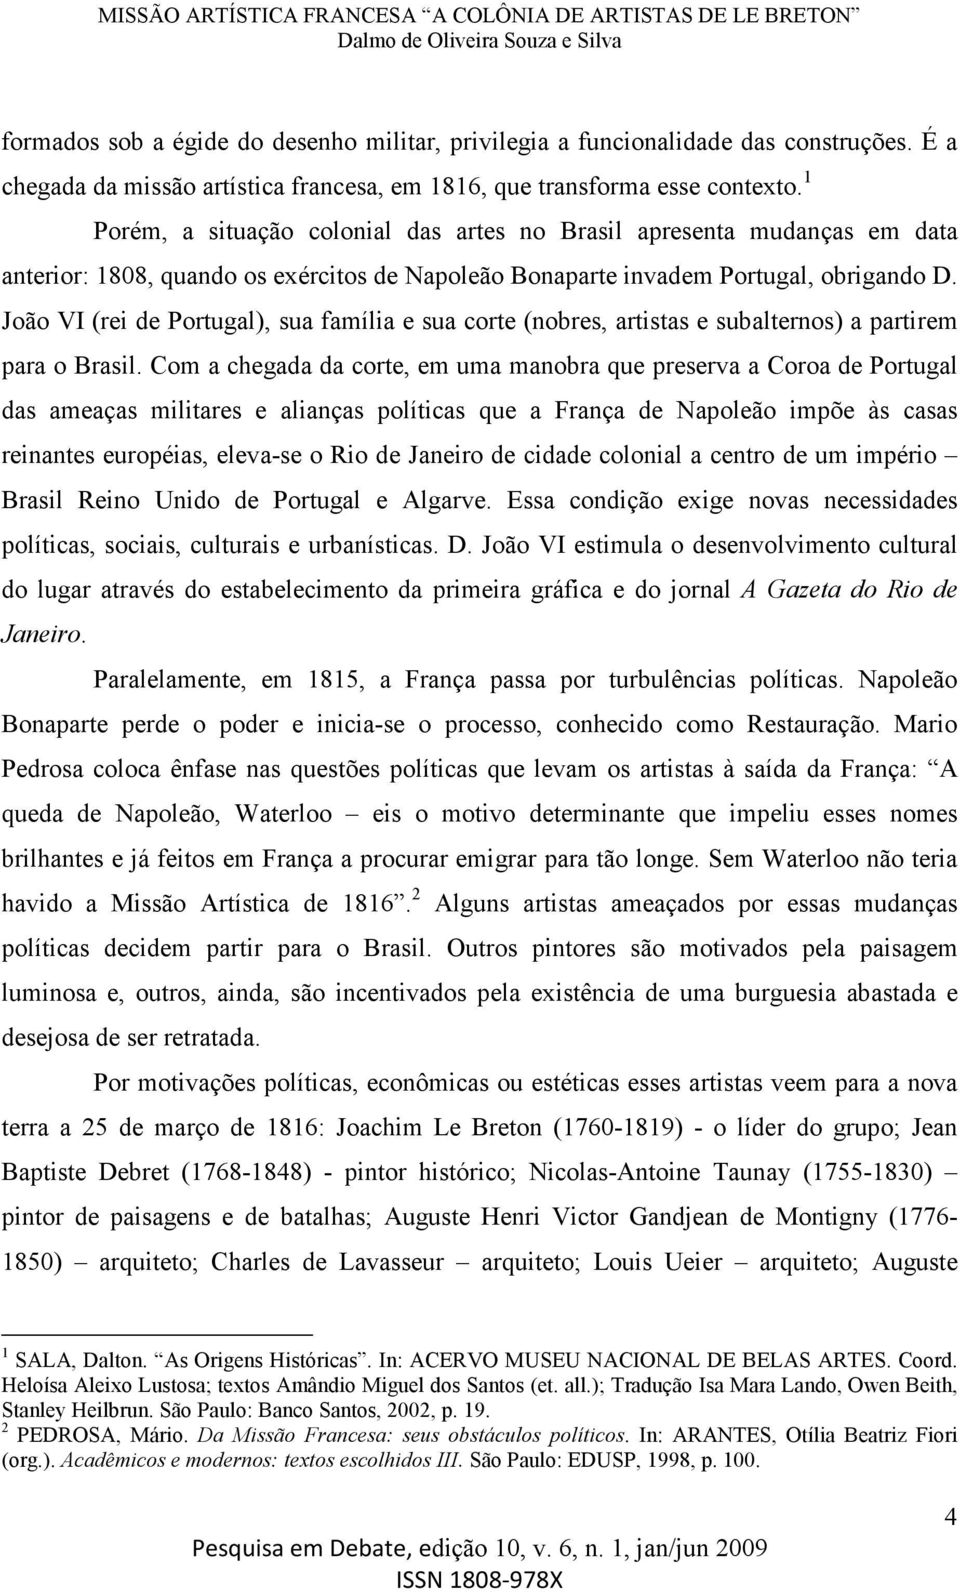 João VI (rei de Portugal), sua família e sua corte (nobres, artistas e subalternos) a partirem para o Brasil.